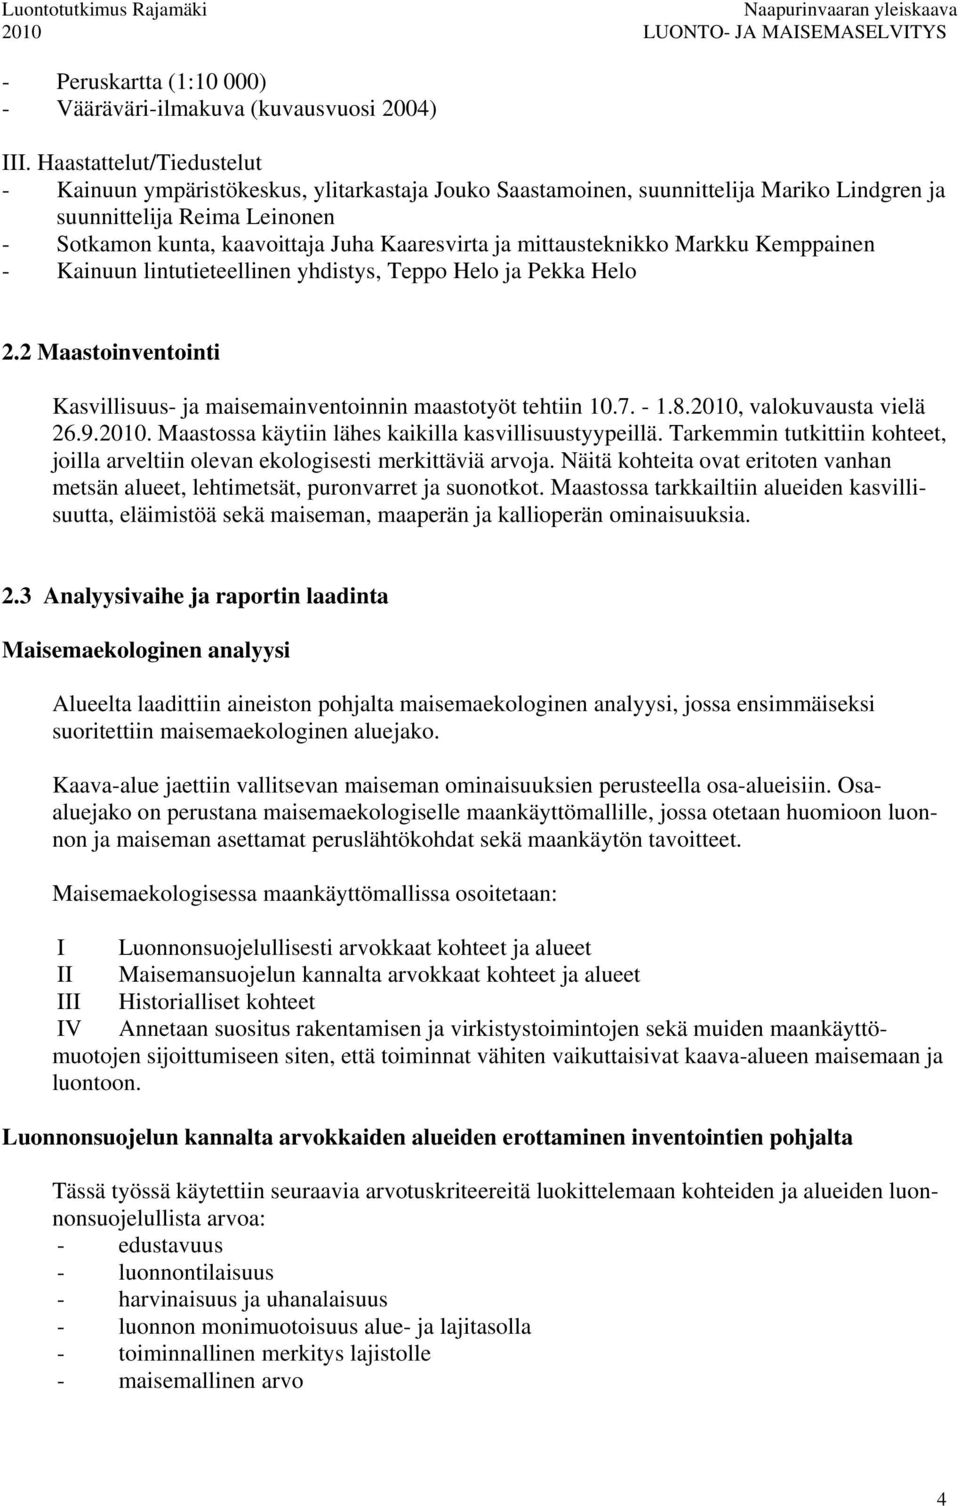 mittausteknikko Markku Kemppainen - Kainuun lintutieteellinen yhdistys, Teppo Helo ja Pekka Helo 2.2 Maastoinventointi Kasvillisuus- ja maisemainventoinnin maastotyöt tehtiin 10.7. - 1.8.